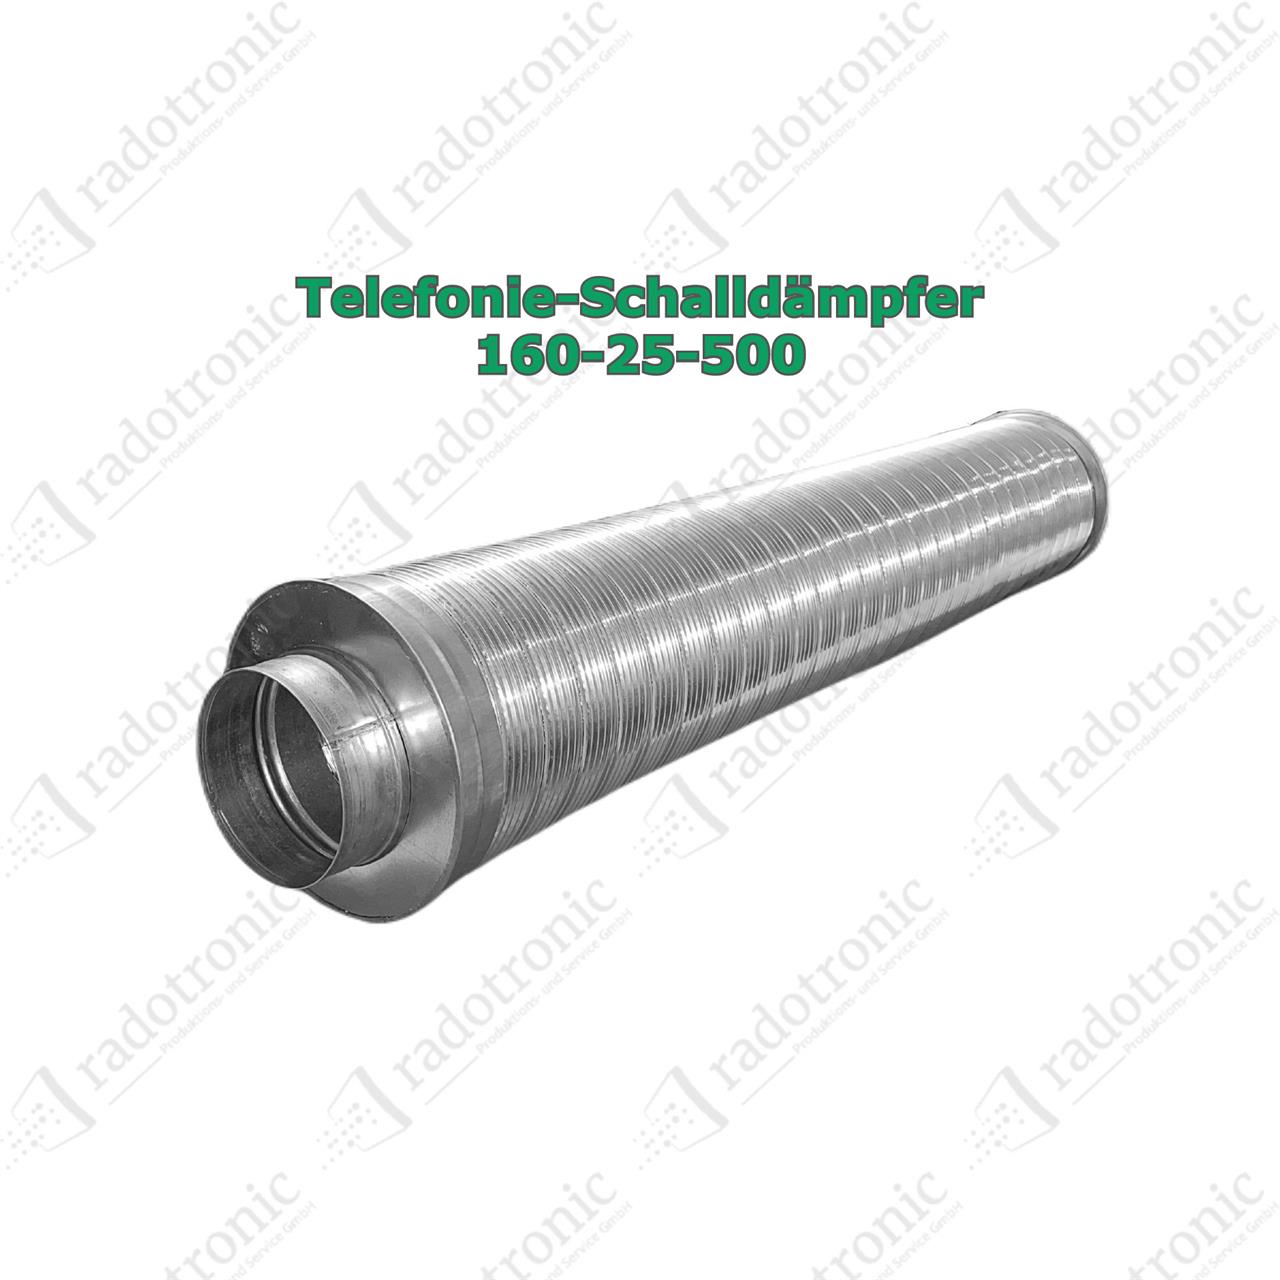 TSD-125-25-500 Telefonie-Schalldämpfer 125-25-500